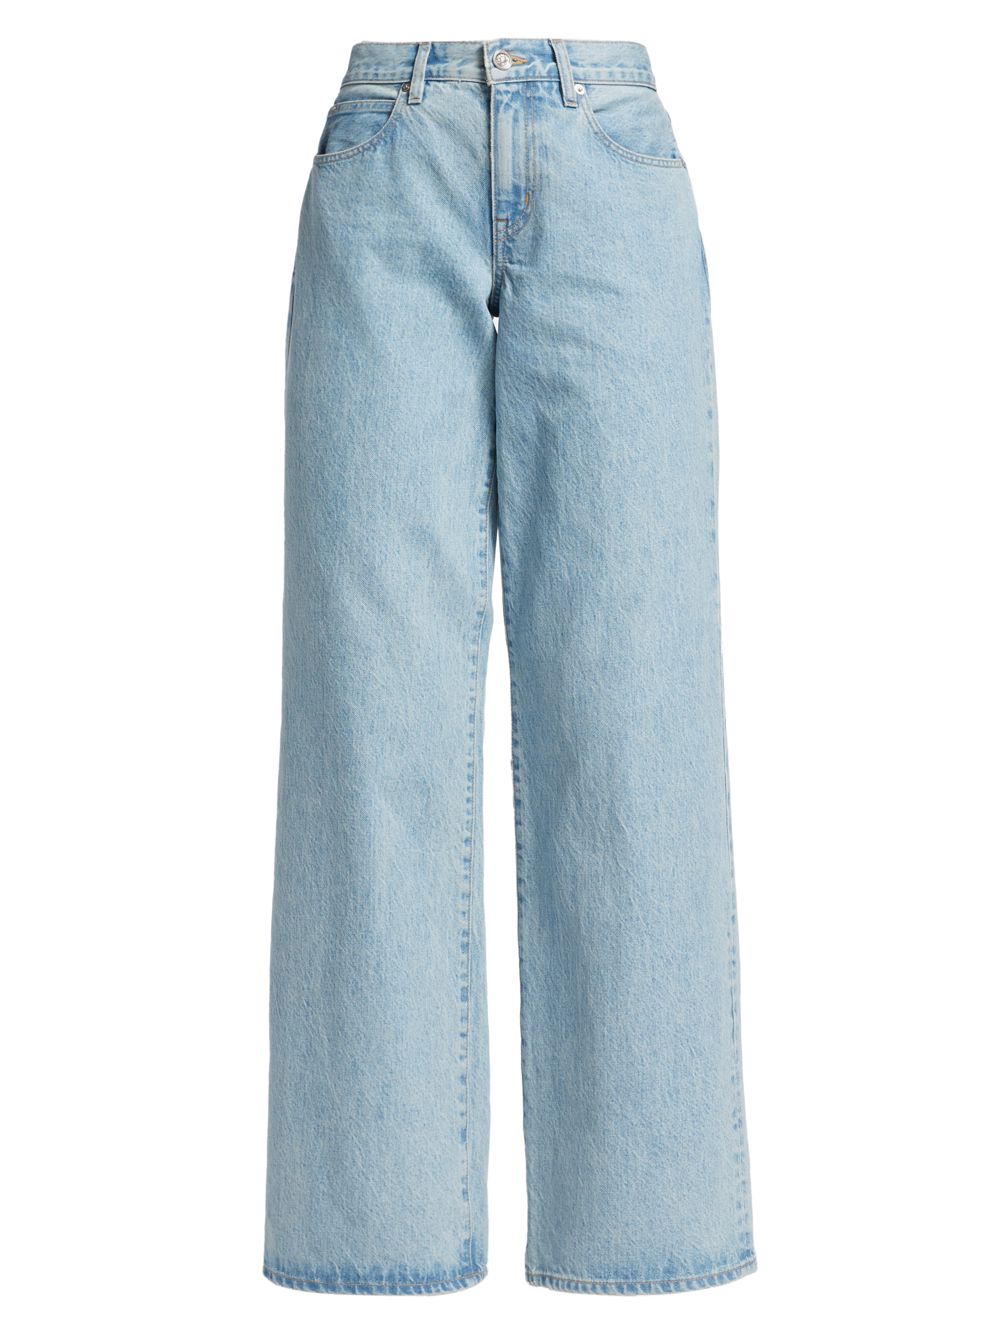 Джинсы Mica со средней посадкой и широкими штанинами SLVRLAKE джинсы широкие slvrlake mica размер 25 синий